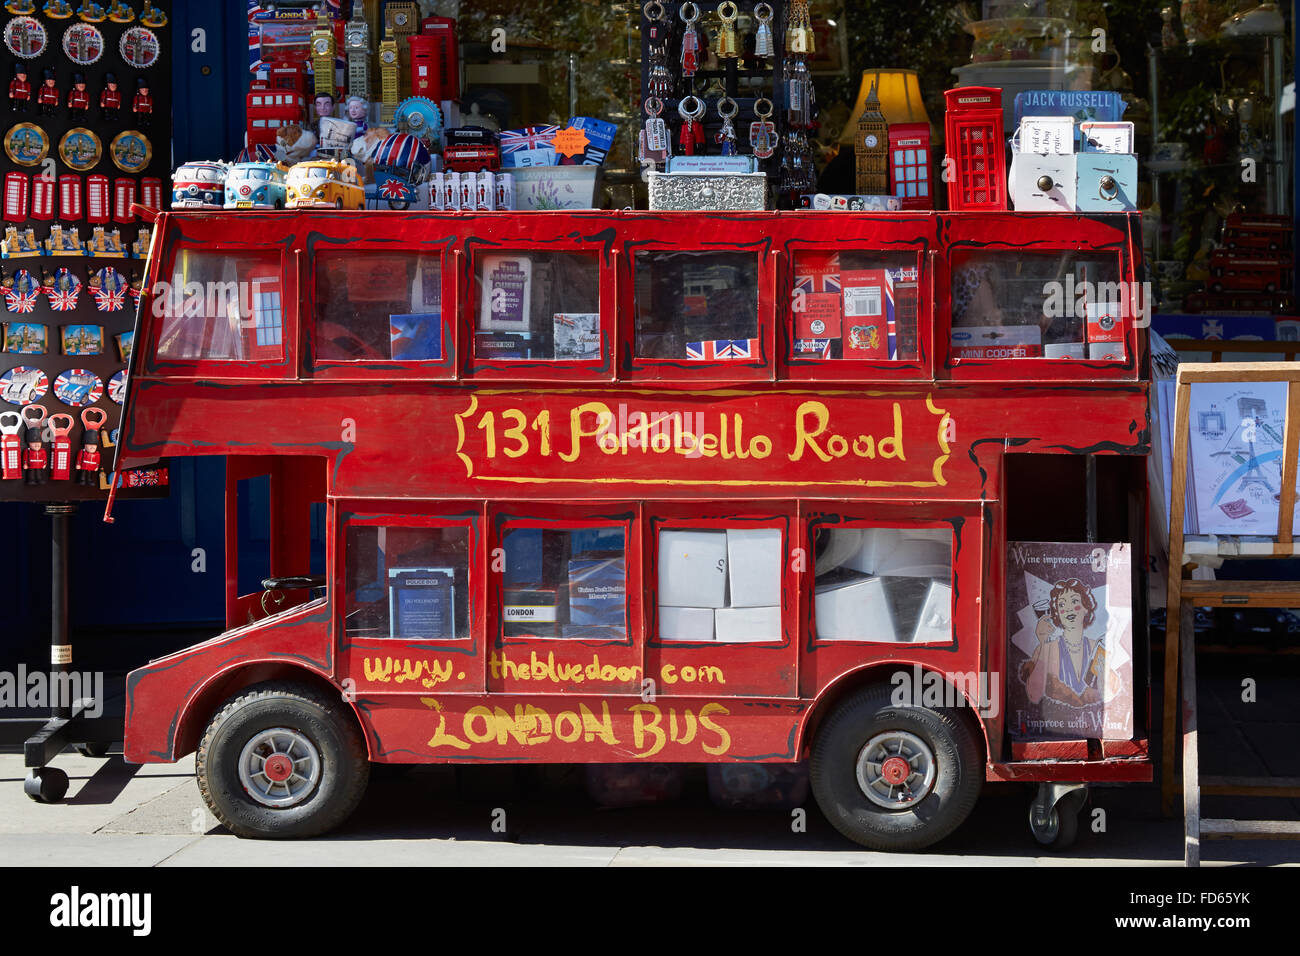 Boutique de souvenirs avec Portobello road London bus rouge modèle dans Londres Banque D'Images